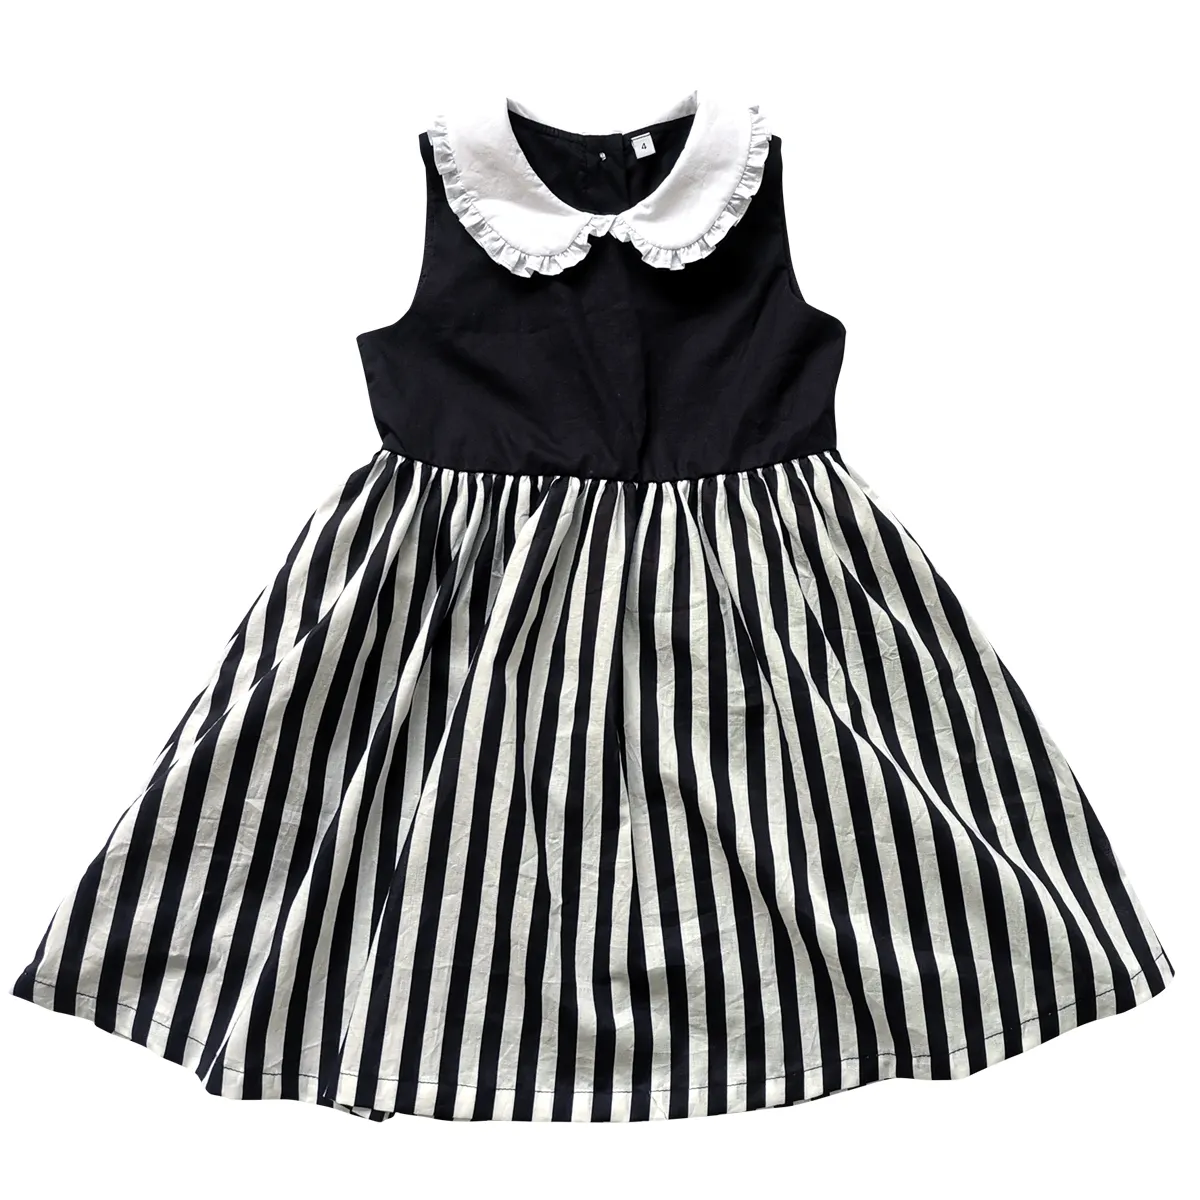 Tela personalizada al por mayor bebé niña vestido primavera otoño moda negro blanco rayas vestido niños niñas nuevo estilo Boutique vestido